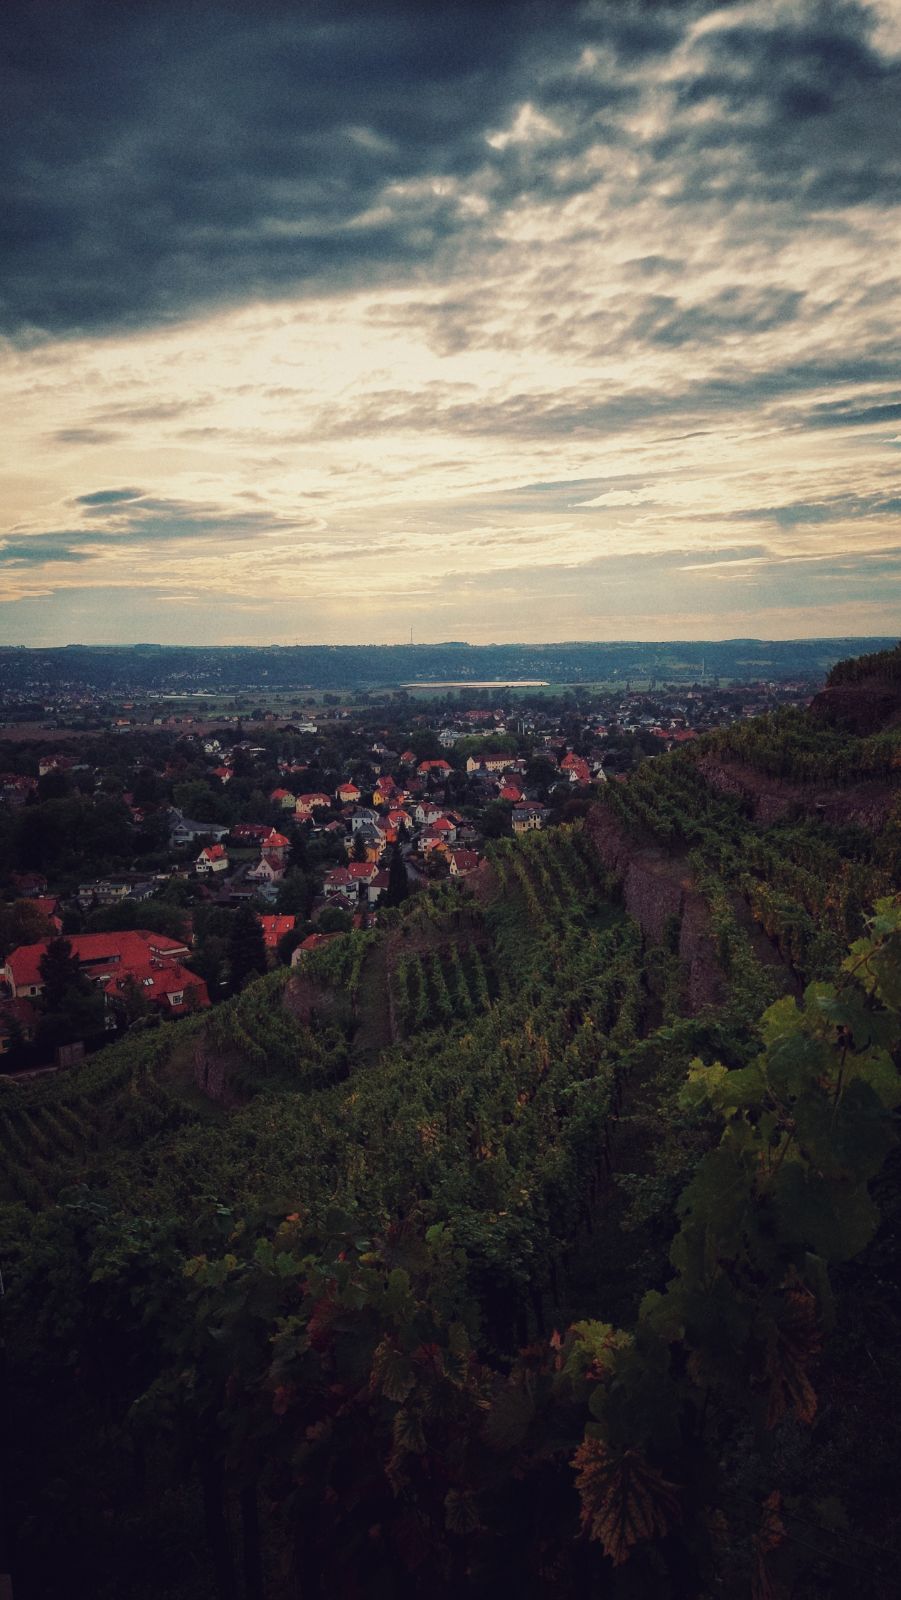 Radebeul vineyards under troubled skies, looking west.